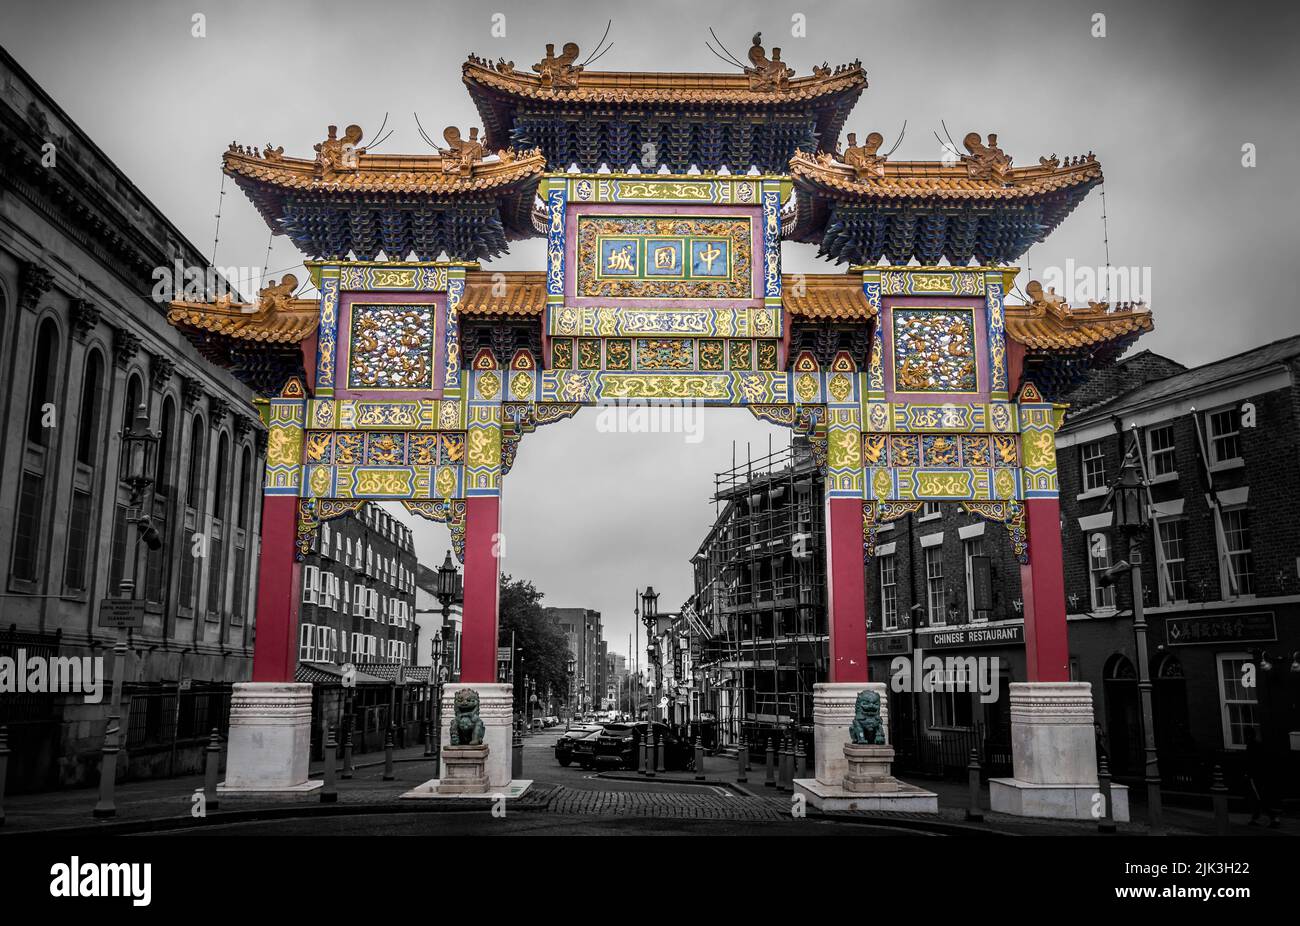 Chinatown, Liverpool, UK Stock Photo